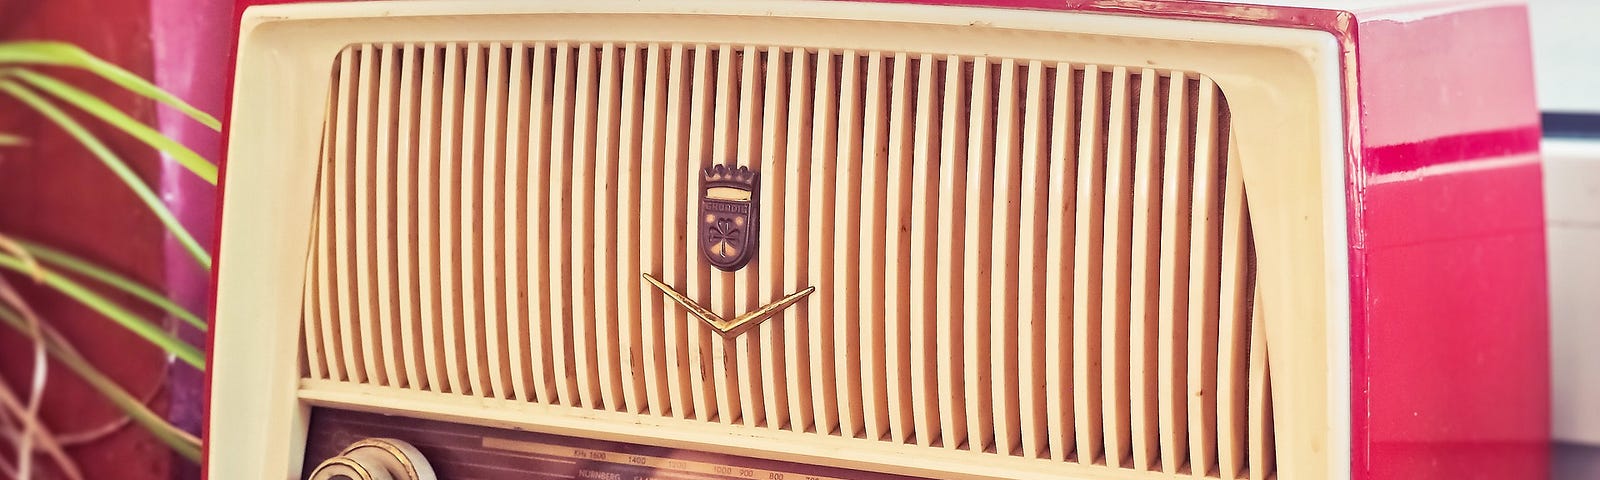 A vintage radio on a windowsill